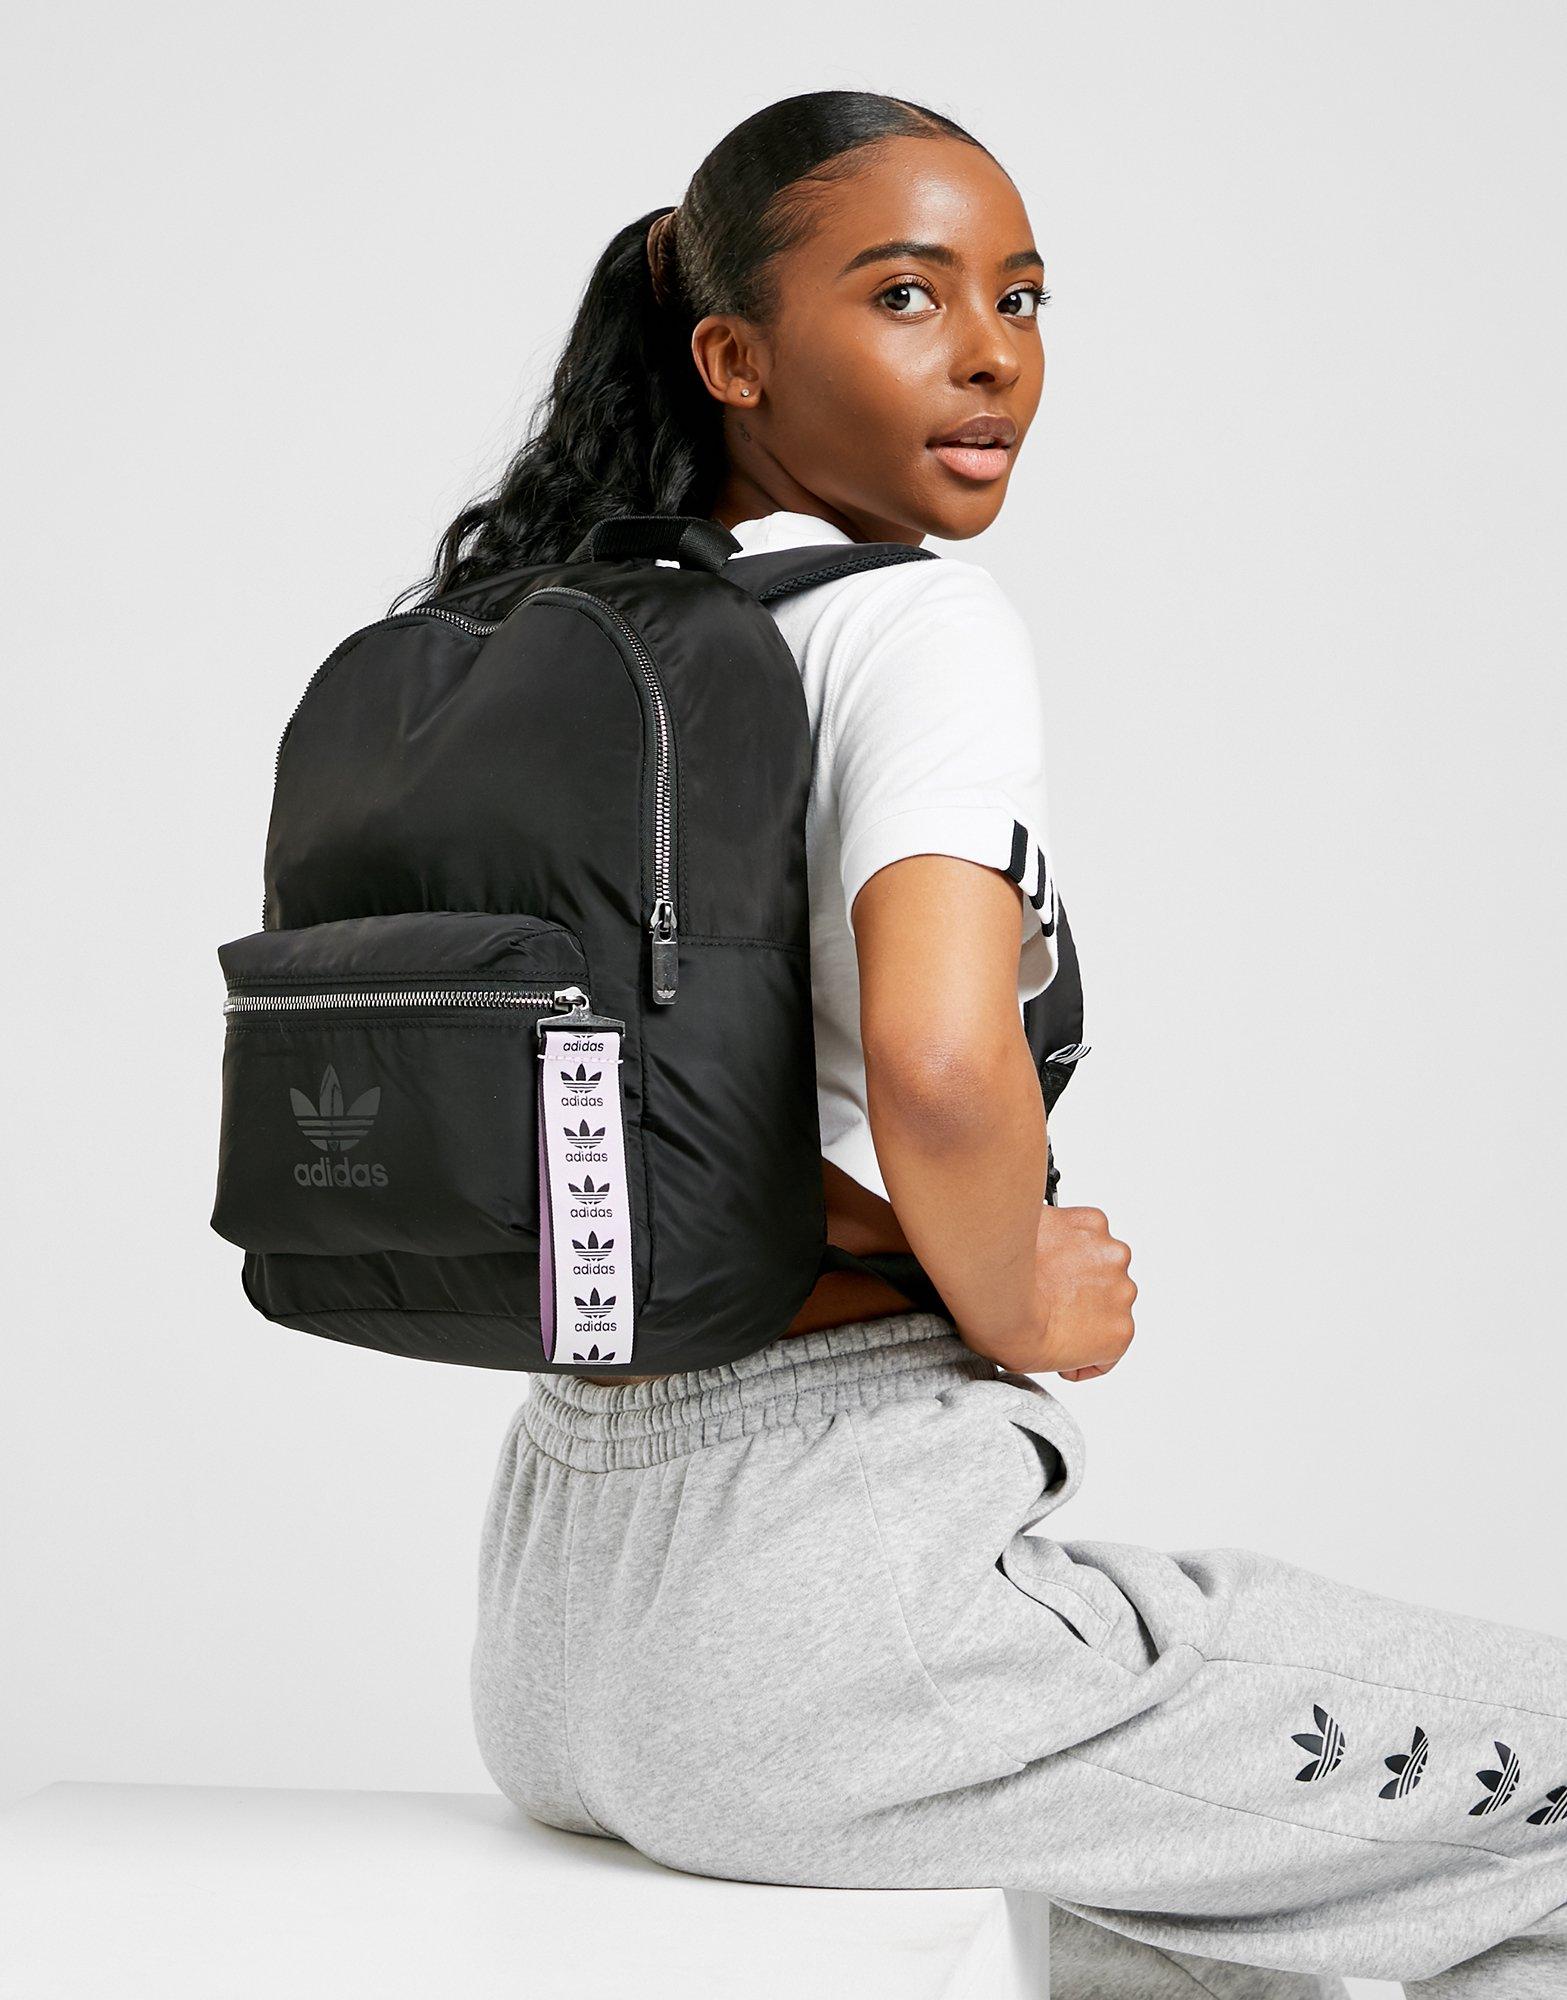 adidas backpack nylon